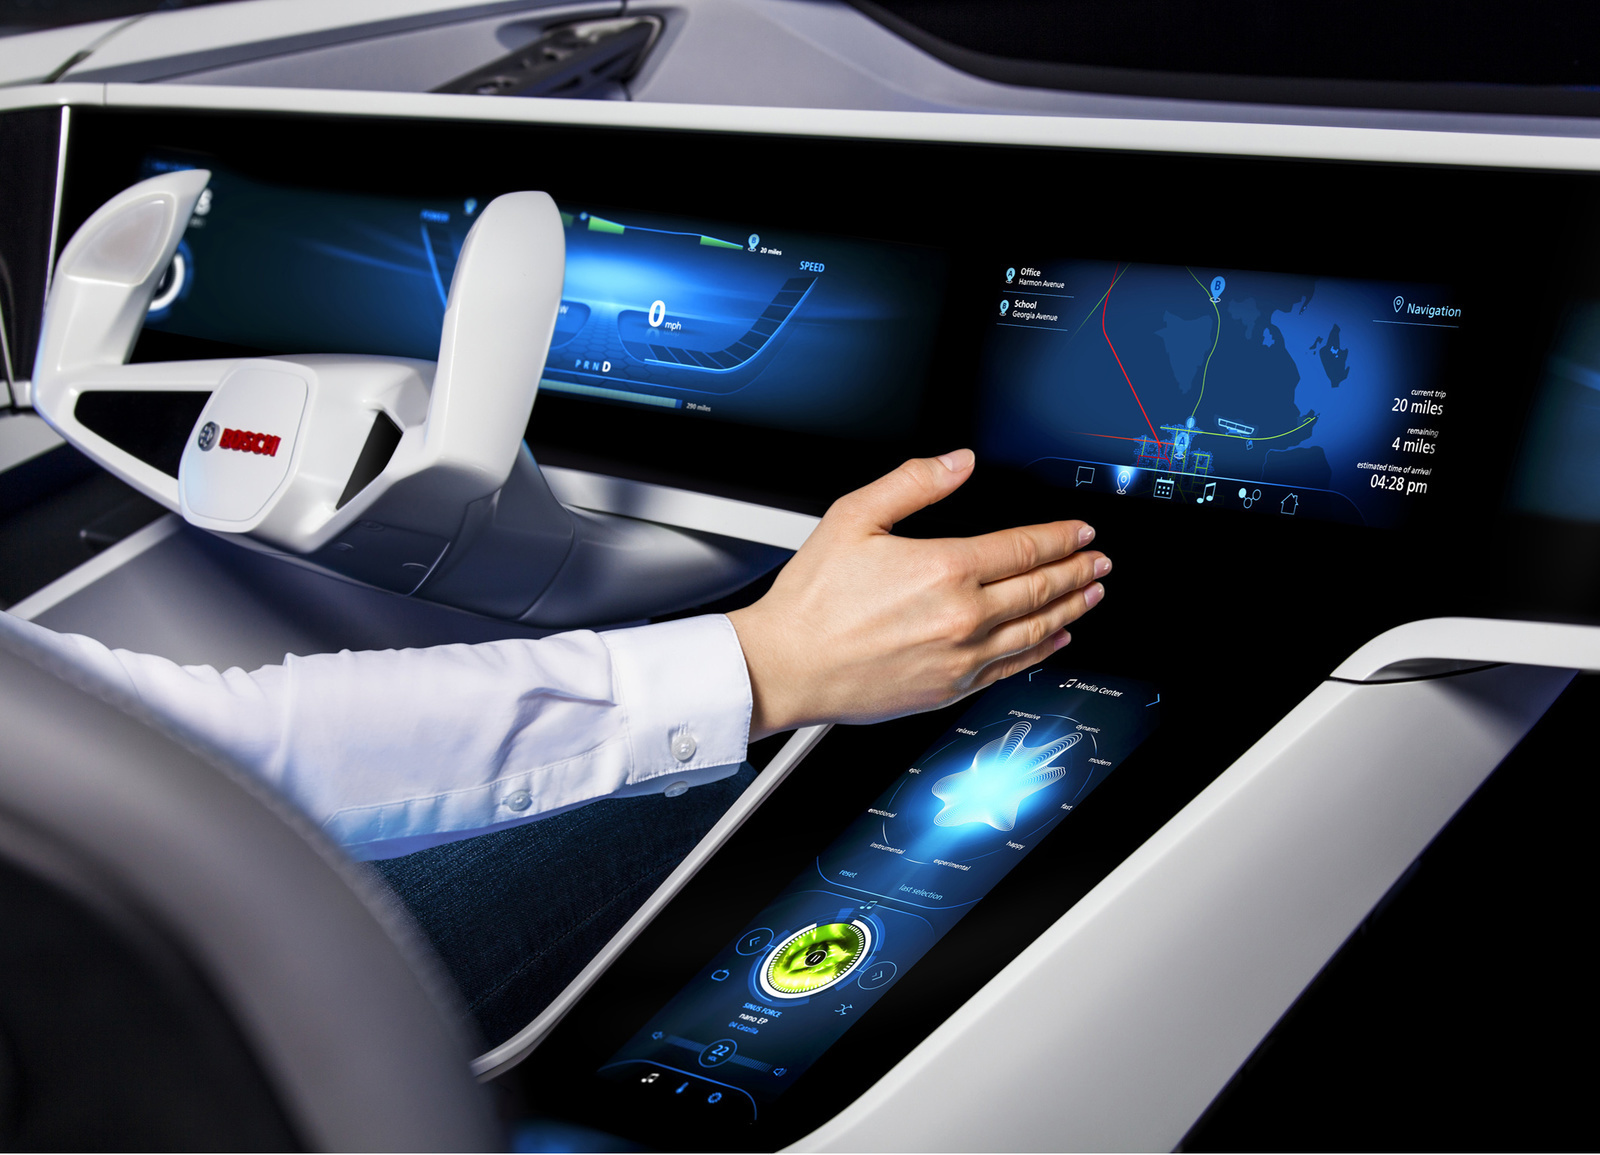 Veštačka inteligencija: Bosch navodi automobile da uče i sprovode odgovarajuće radnje